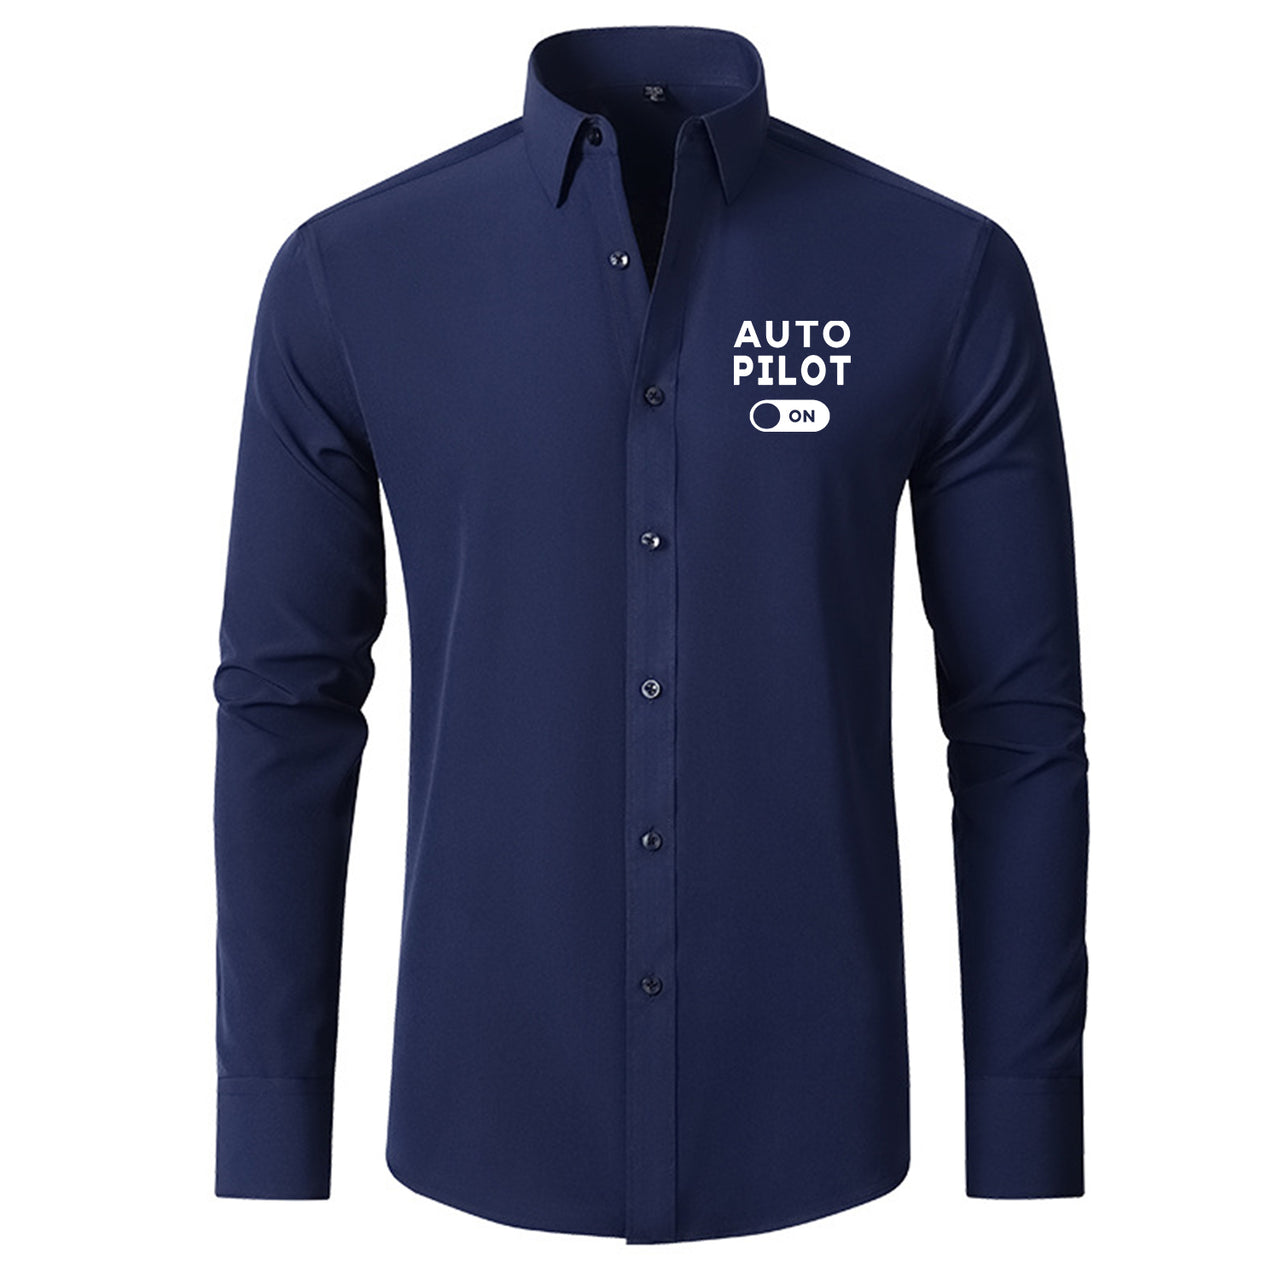 Auto Pilot ON Designed Long Sleeve Shirts